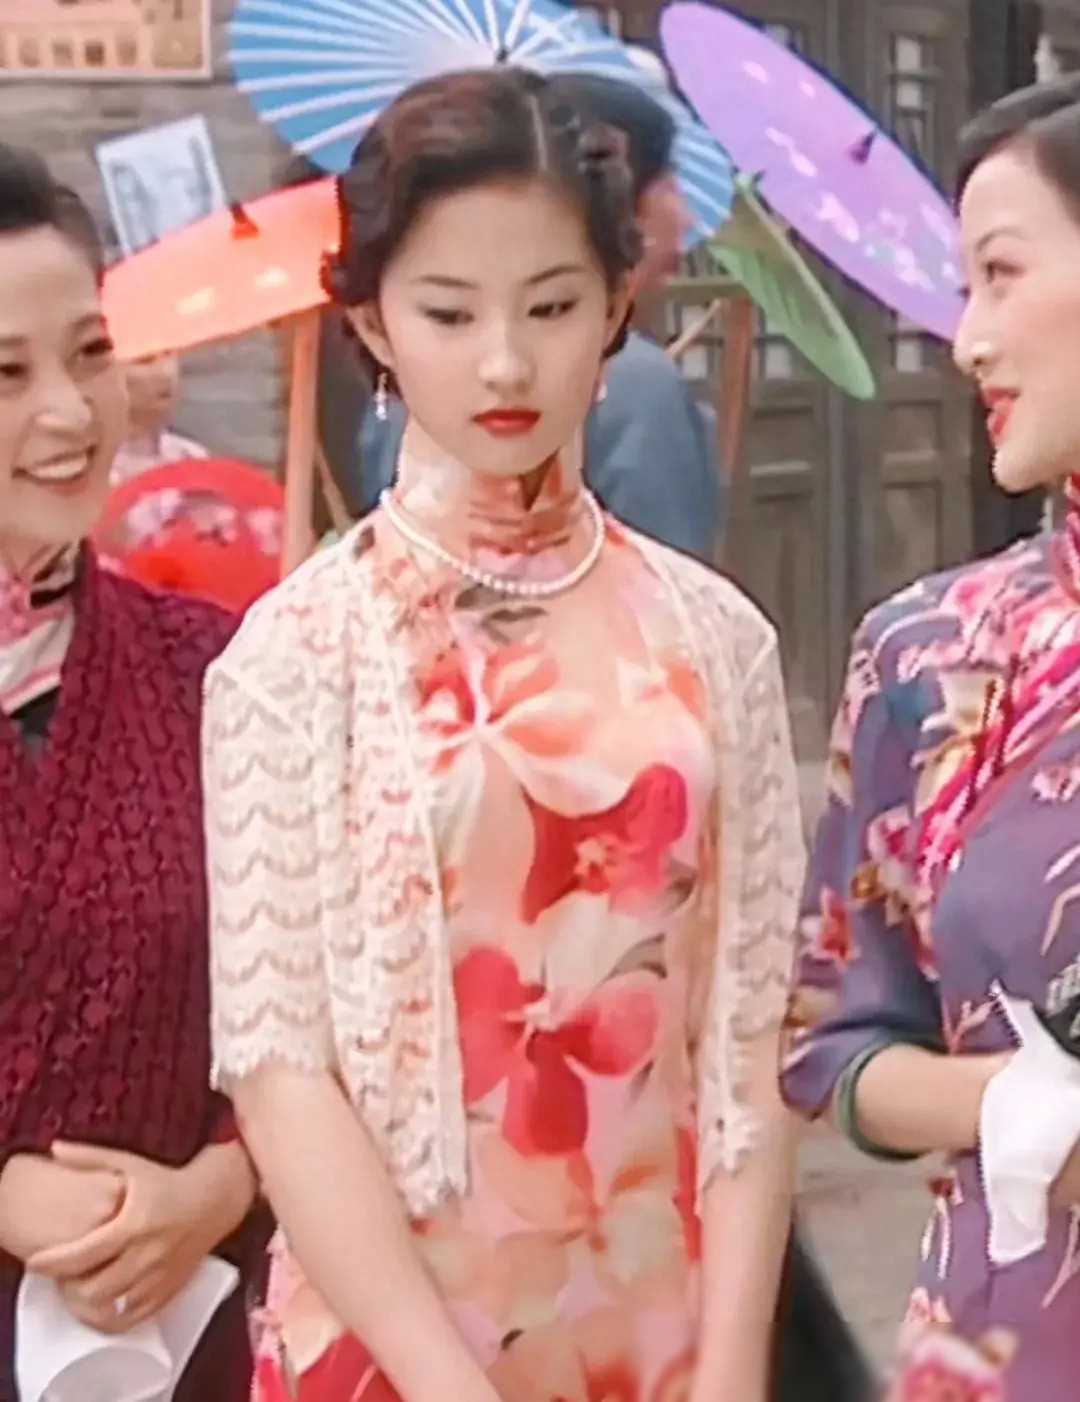 在多部影视作品中,我们都能见到刘亦菲身着旗袍的身影,比如《金粉世家